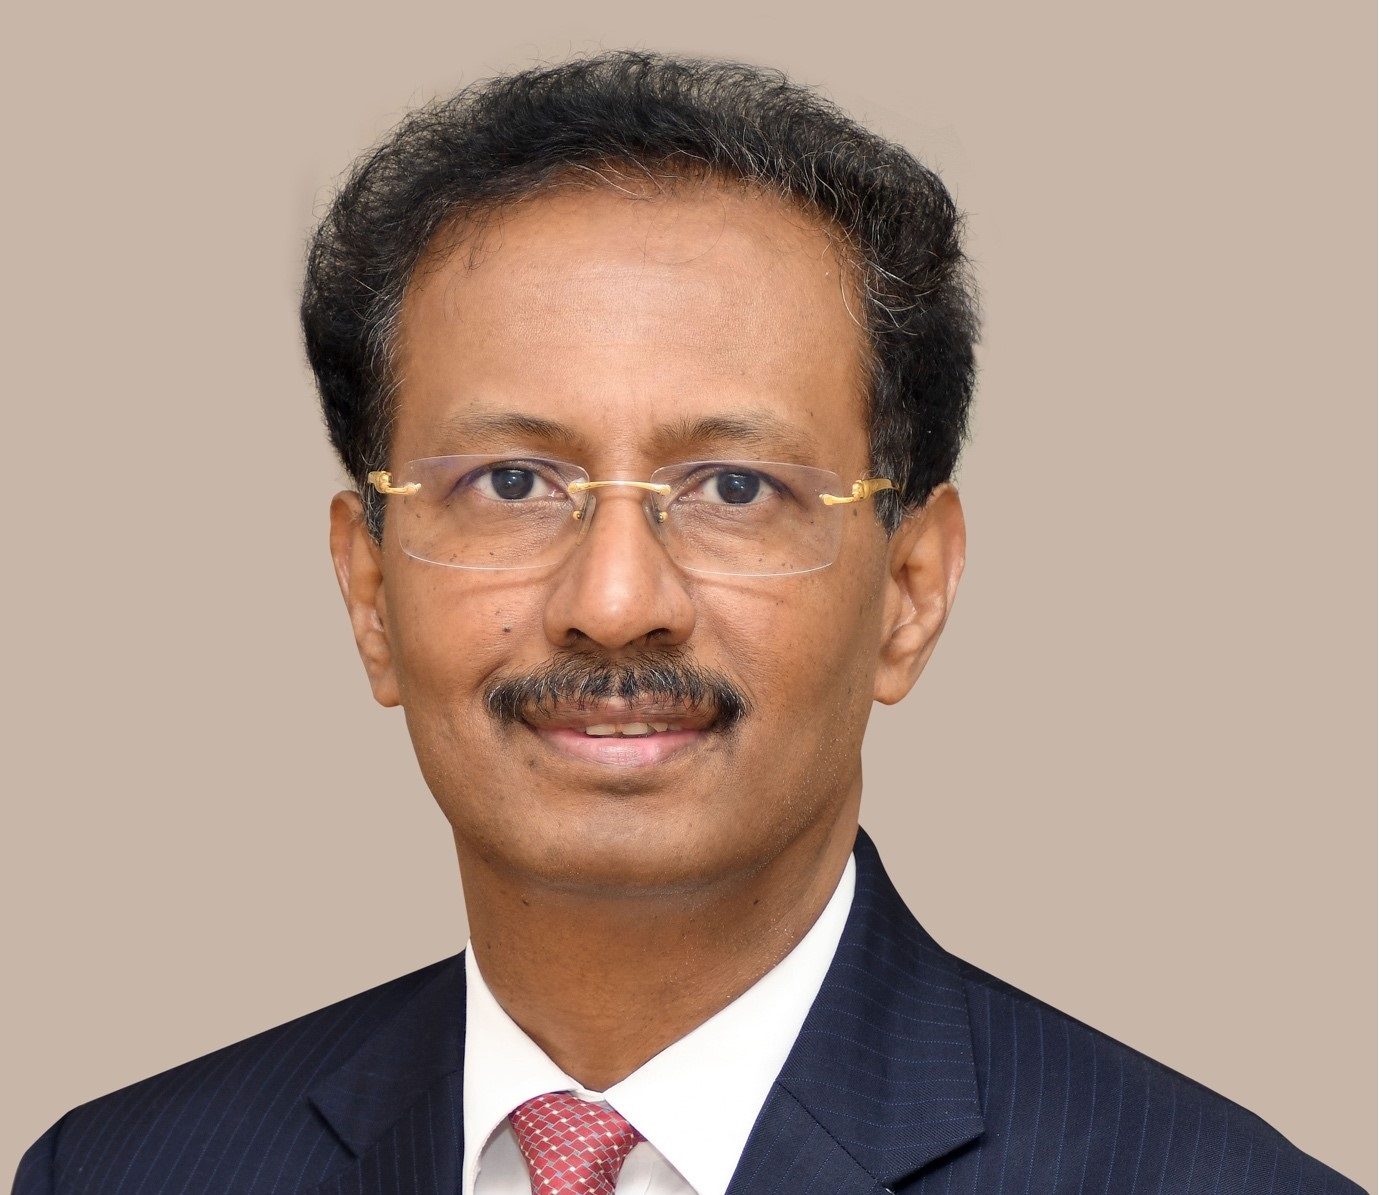 Meet our newest board member: Prof. Shanmuganathan Rajasekaran